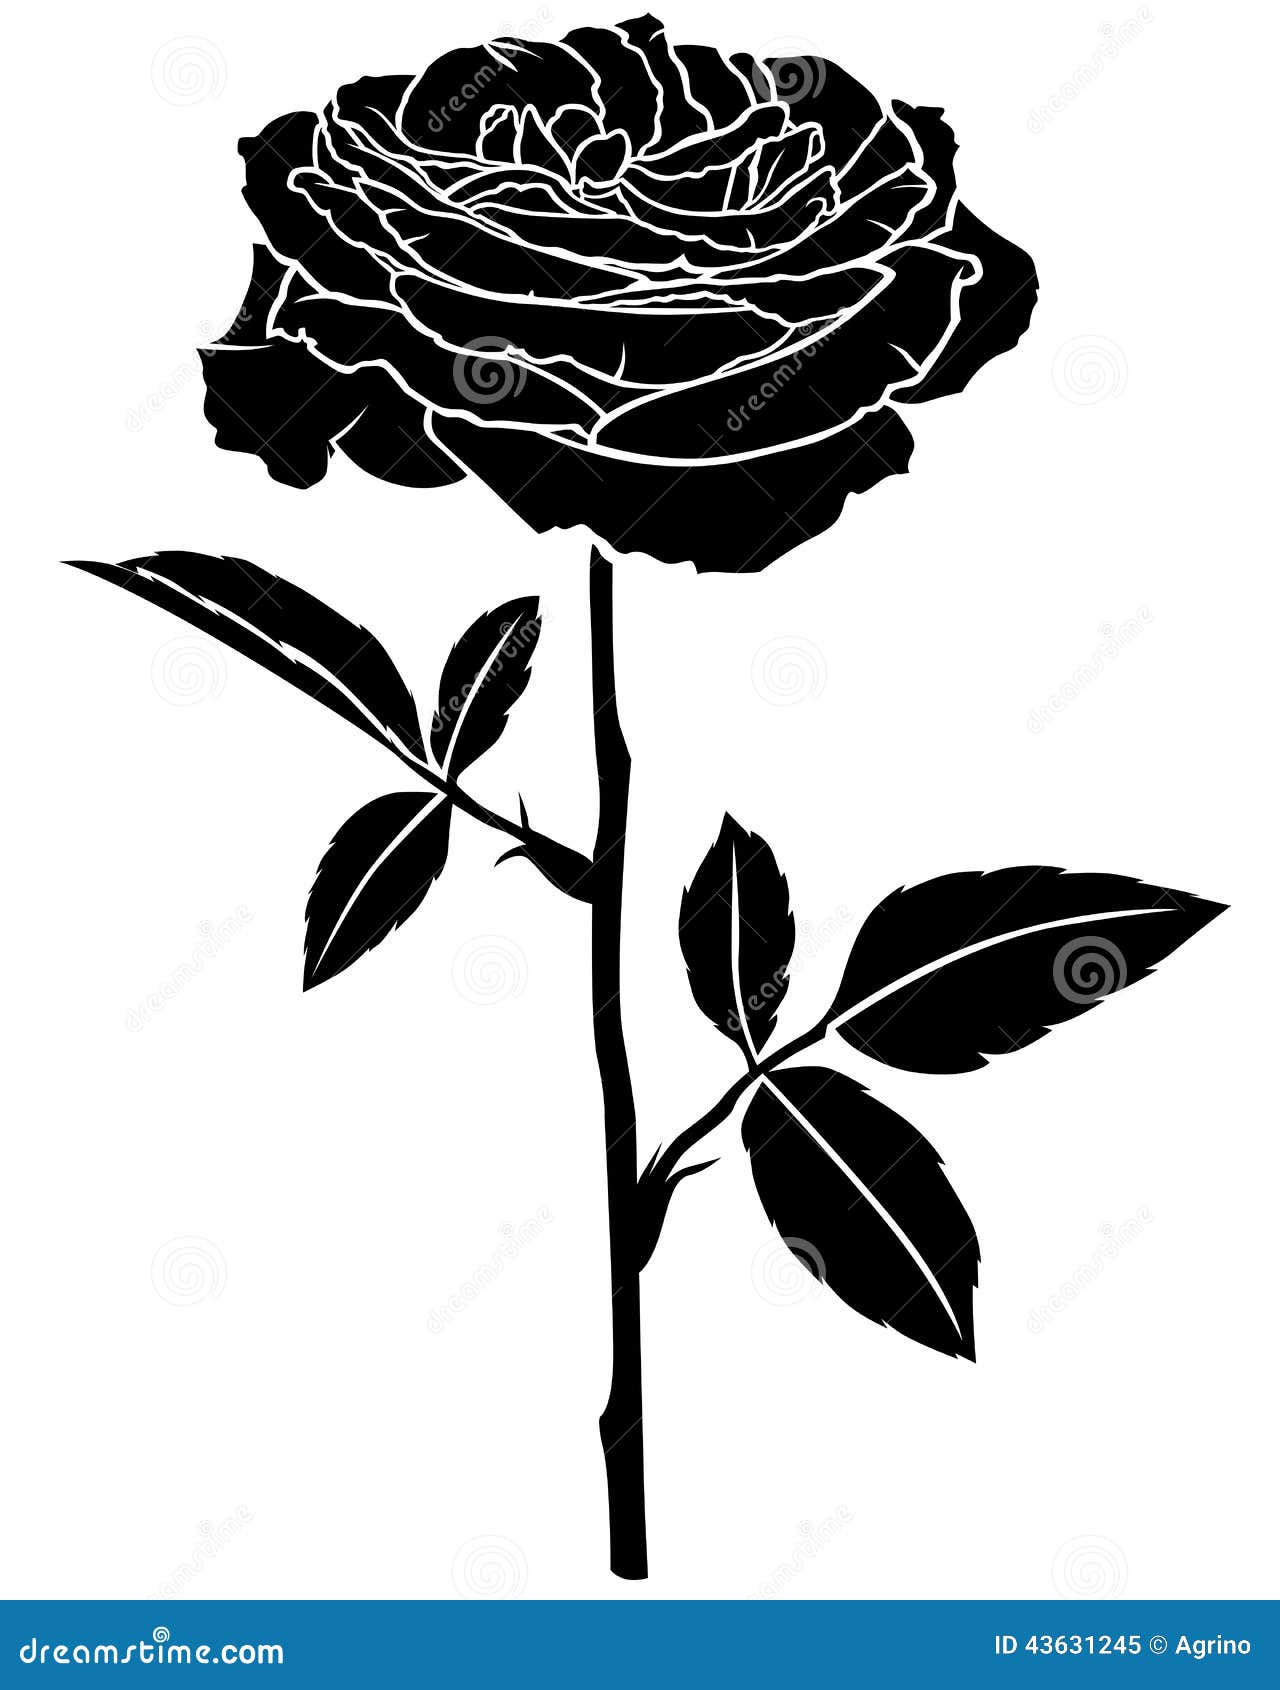 Rose flower silhouette stock vector. Illustration of garden - 43631245